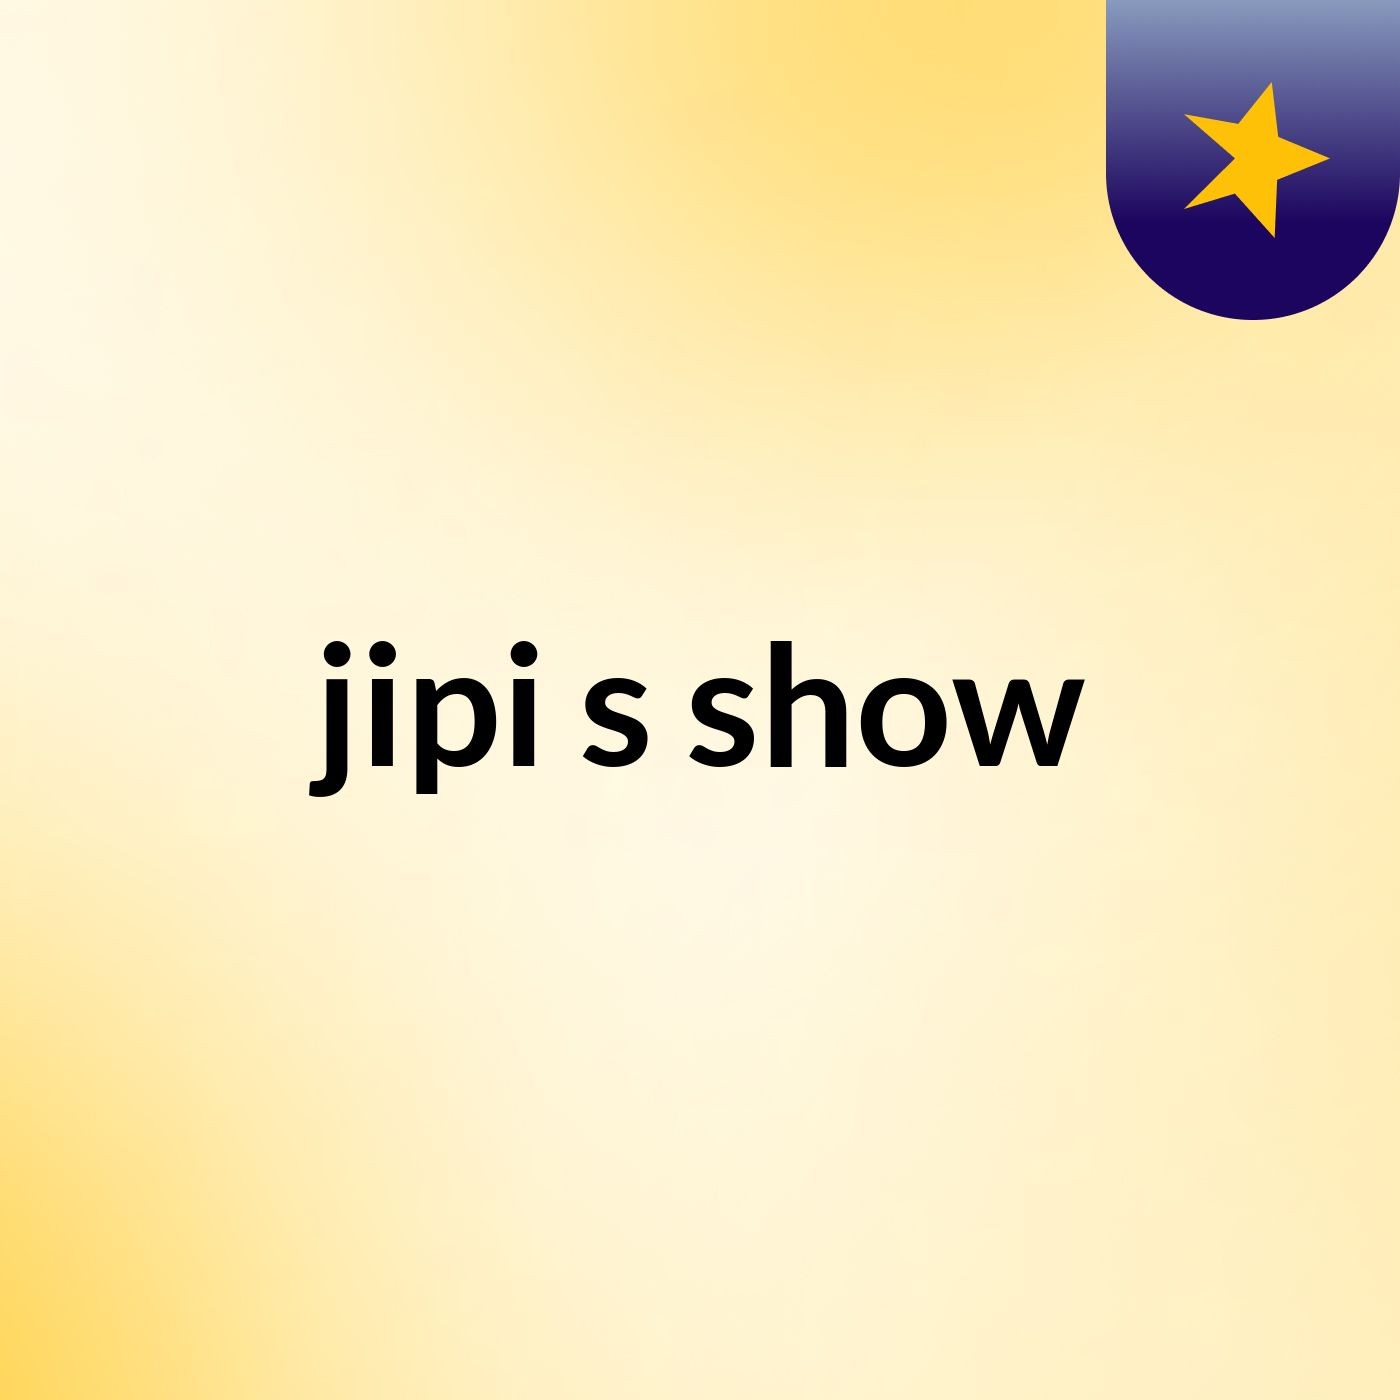 jipi's show